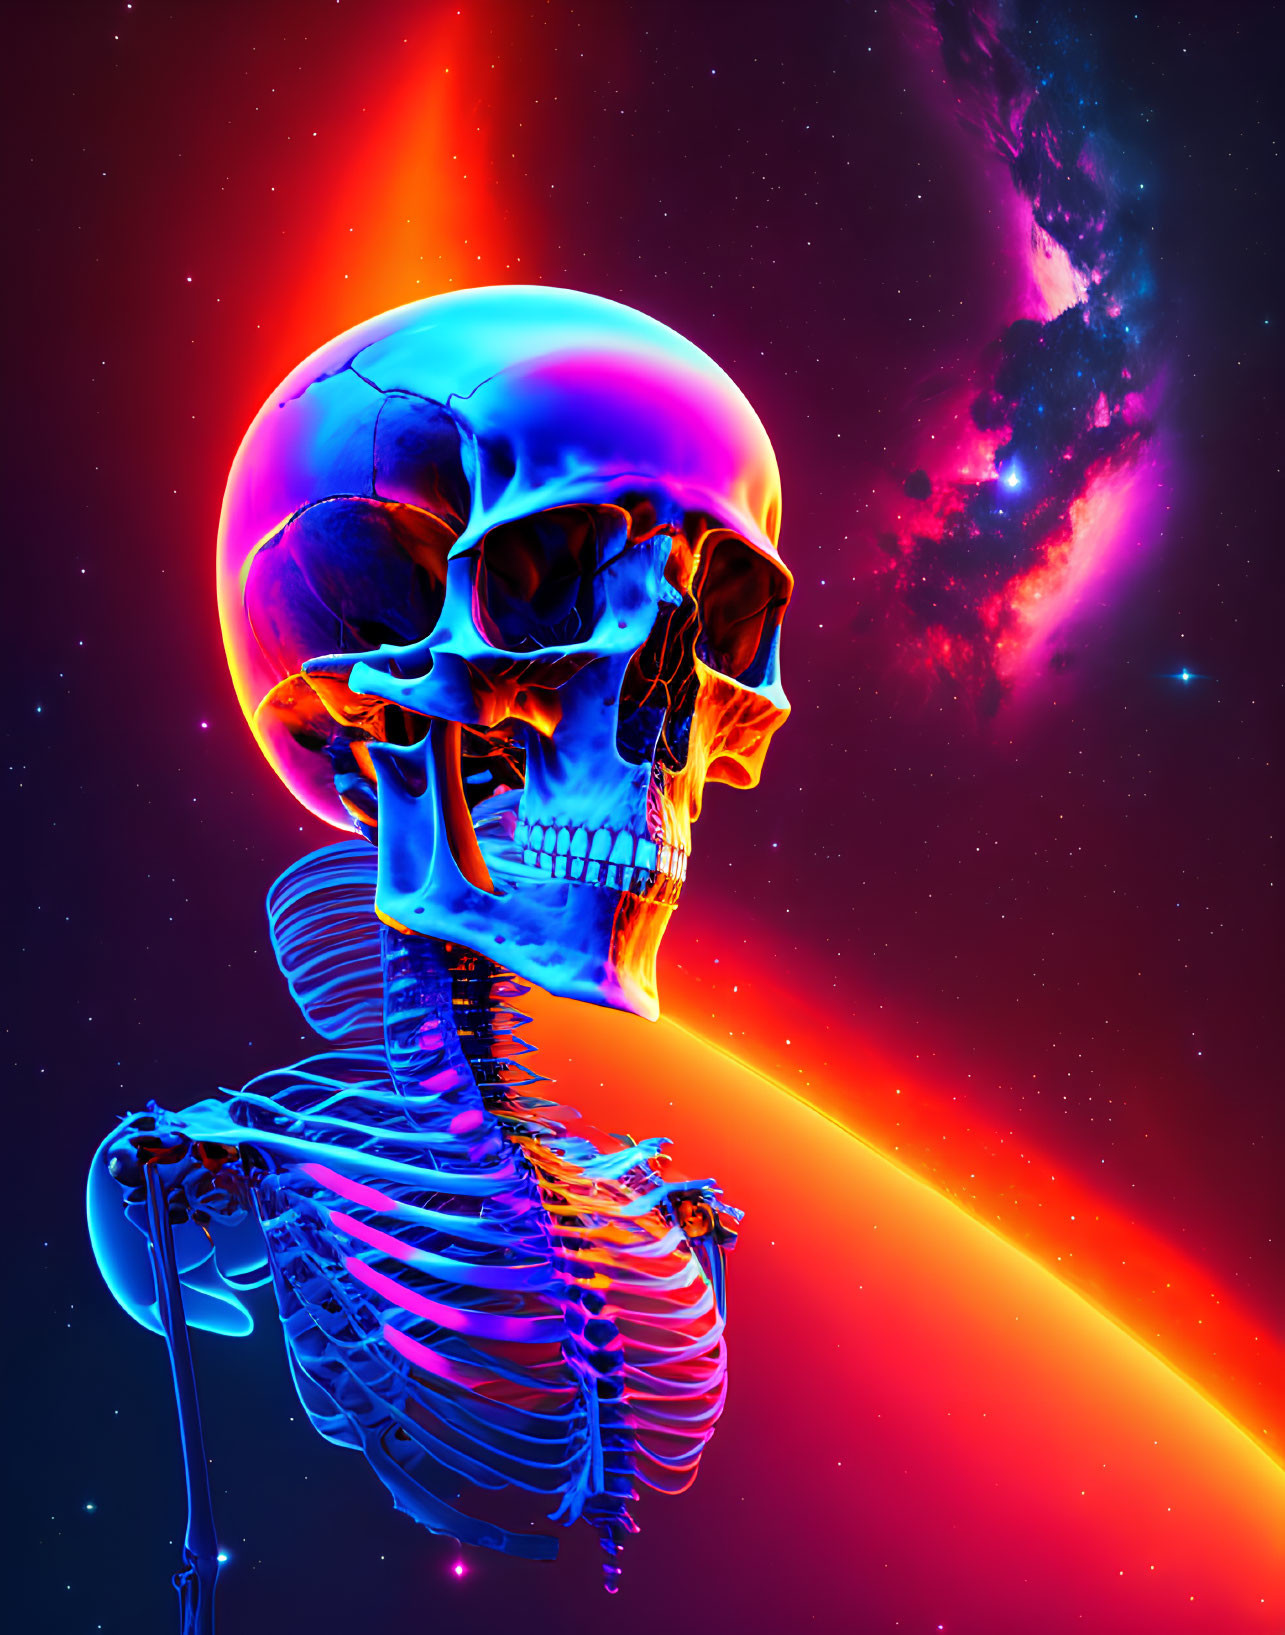 Colorful digital artwork: Glowing skull on skeleton against cosmic backdrop